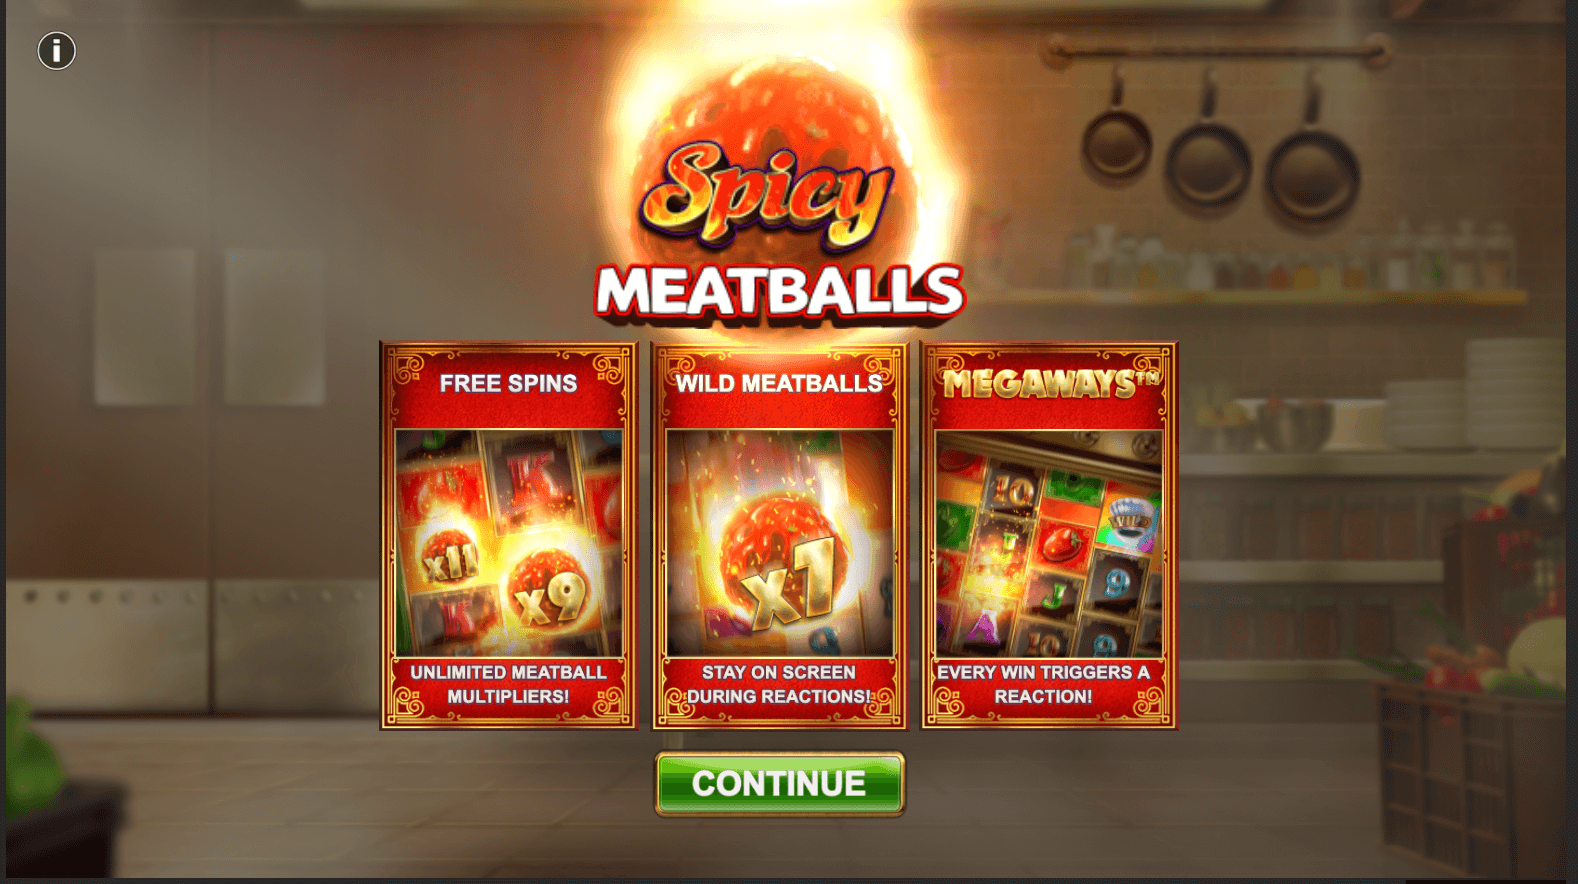 Spicy Meatballs Megaways Spel proces